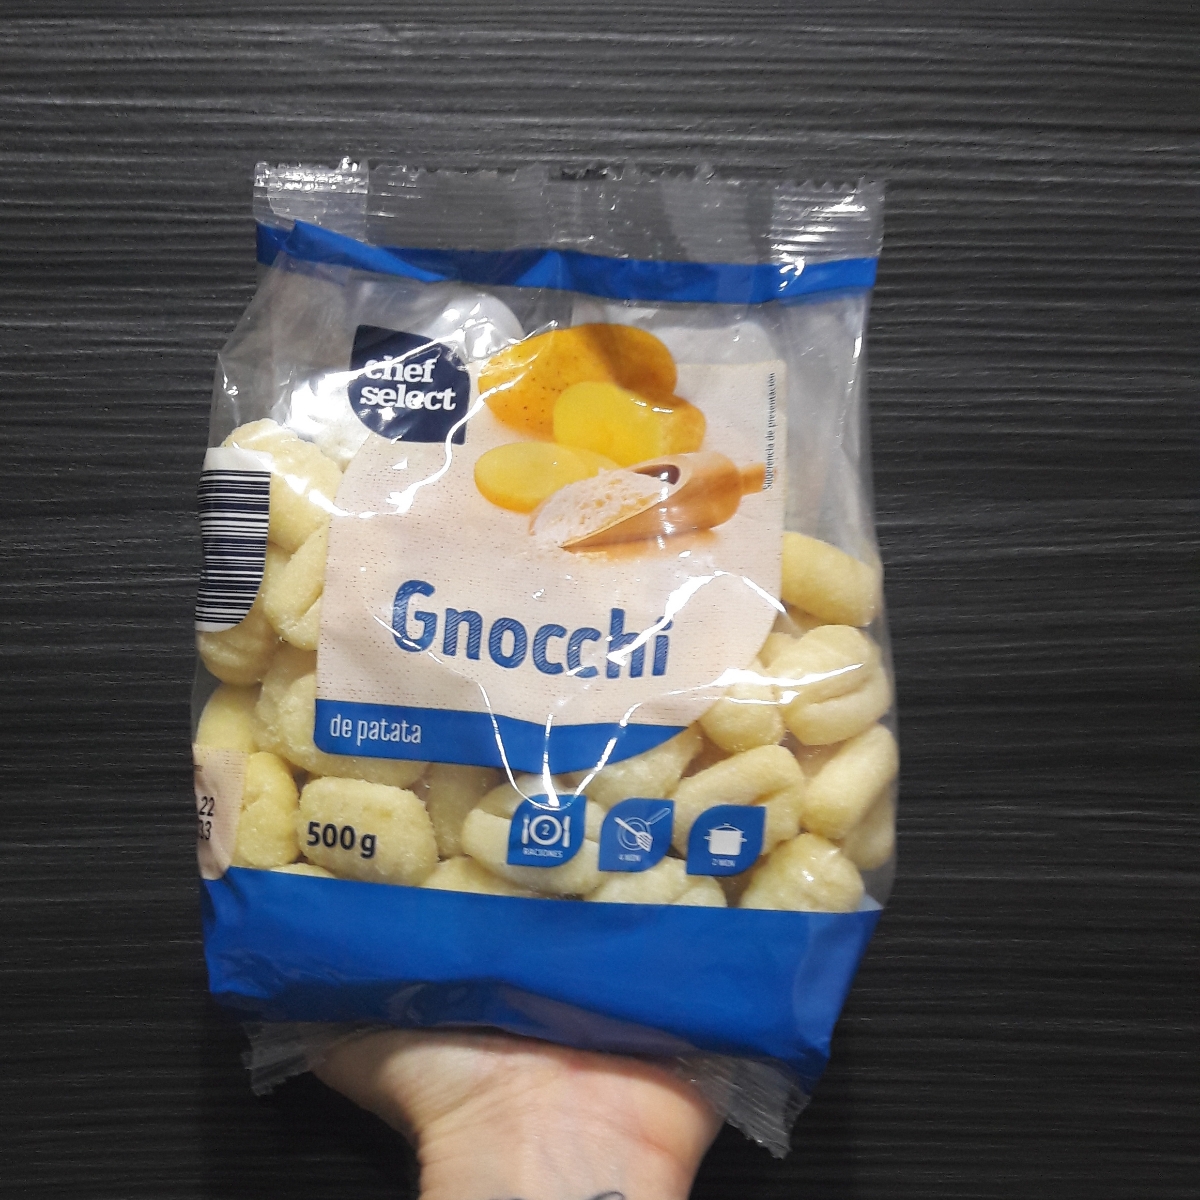 Chef de patata abillion Review | Select Gnocchi